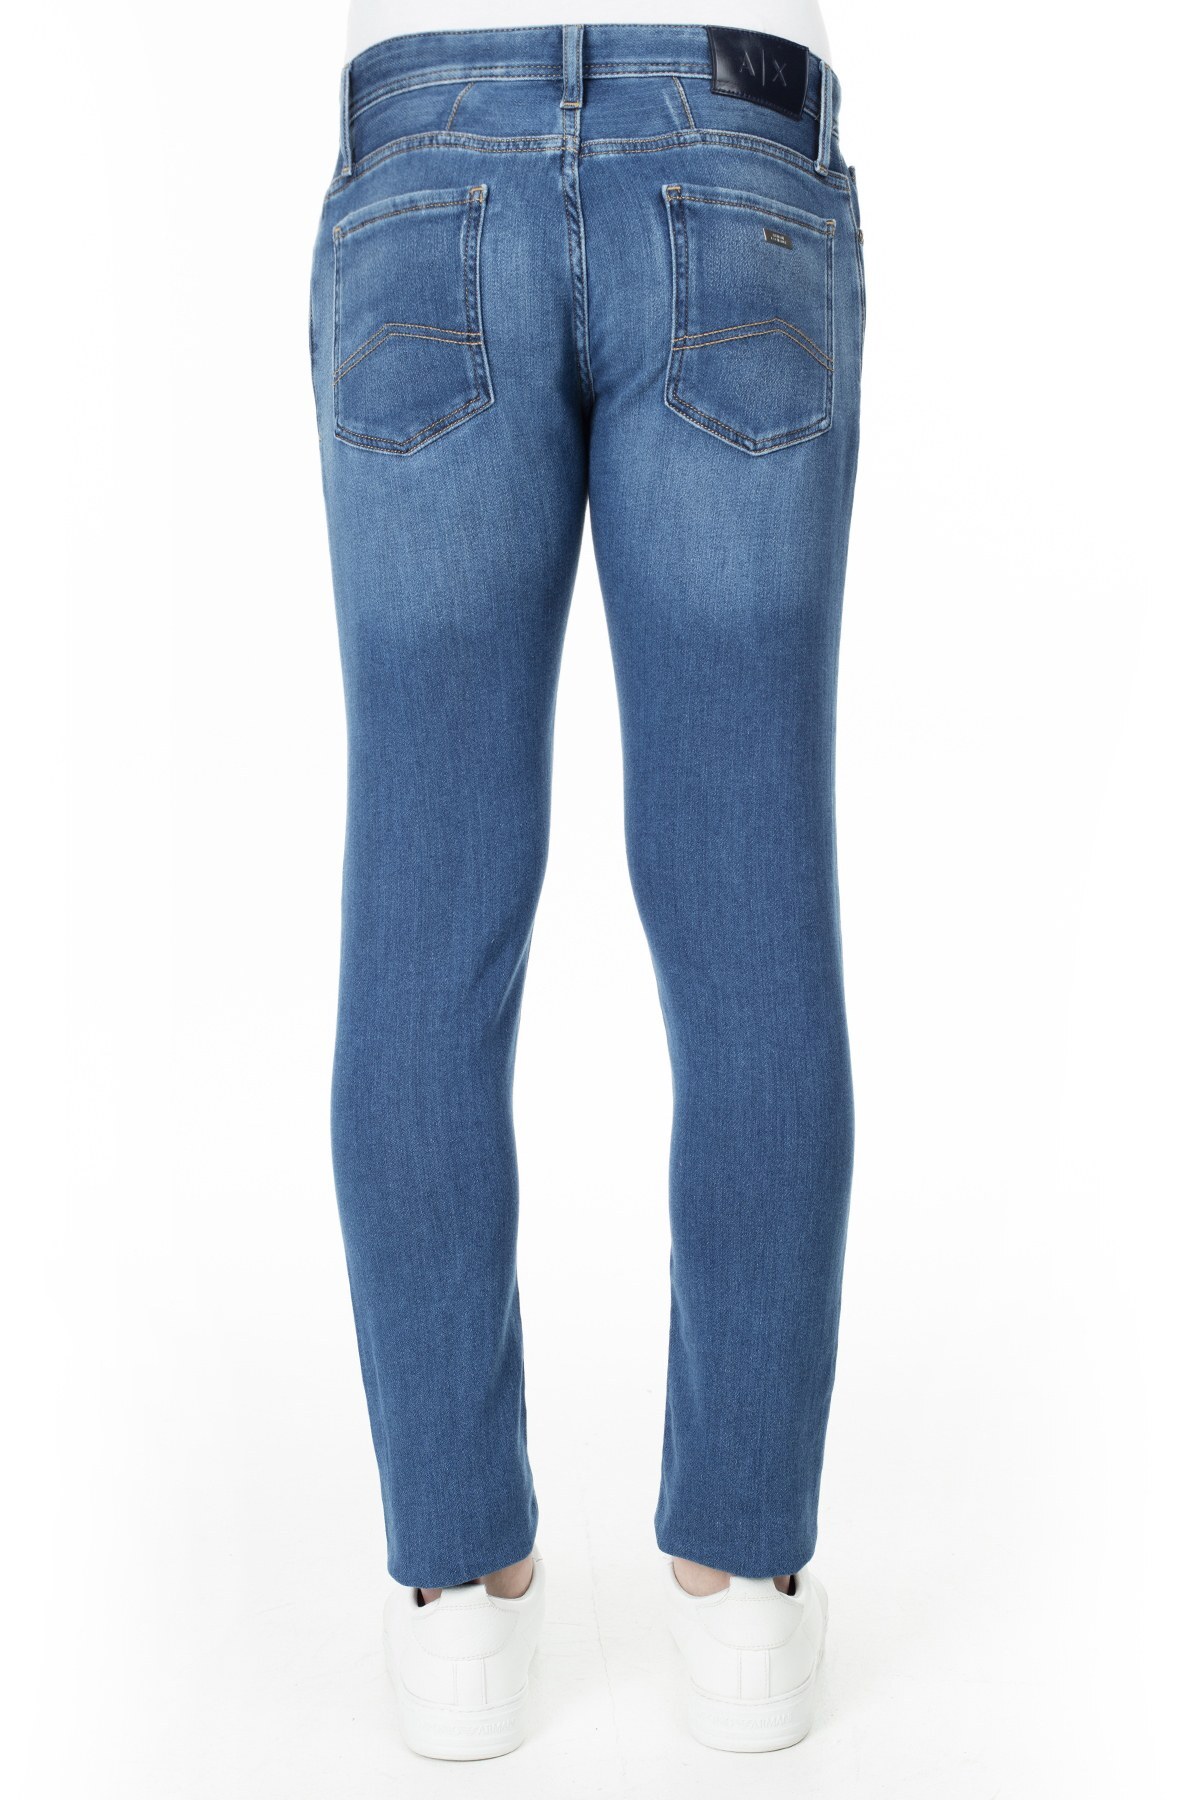 Armani Exchange J14 Jeans Erkek Kot Pantolon 3HZJ14 Z3QMZ 1500 LACİVERT